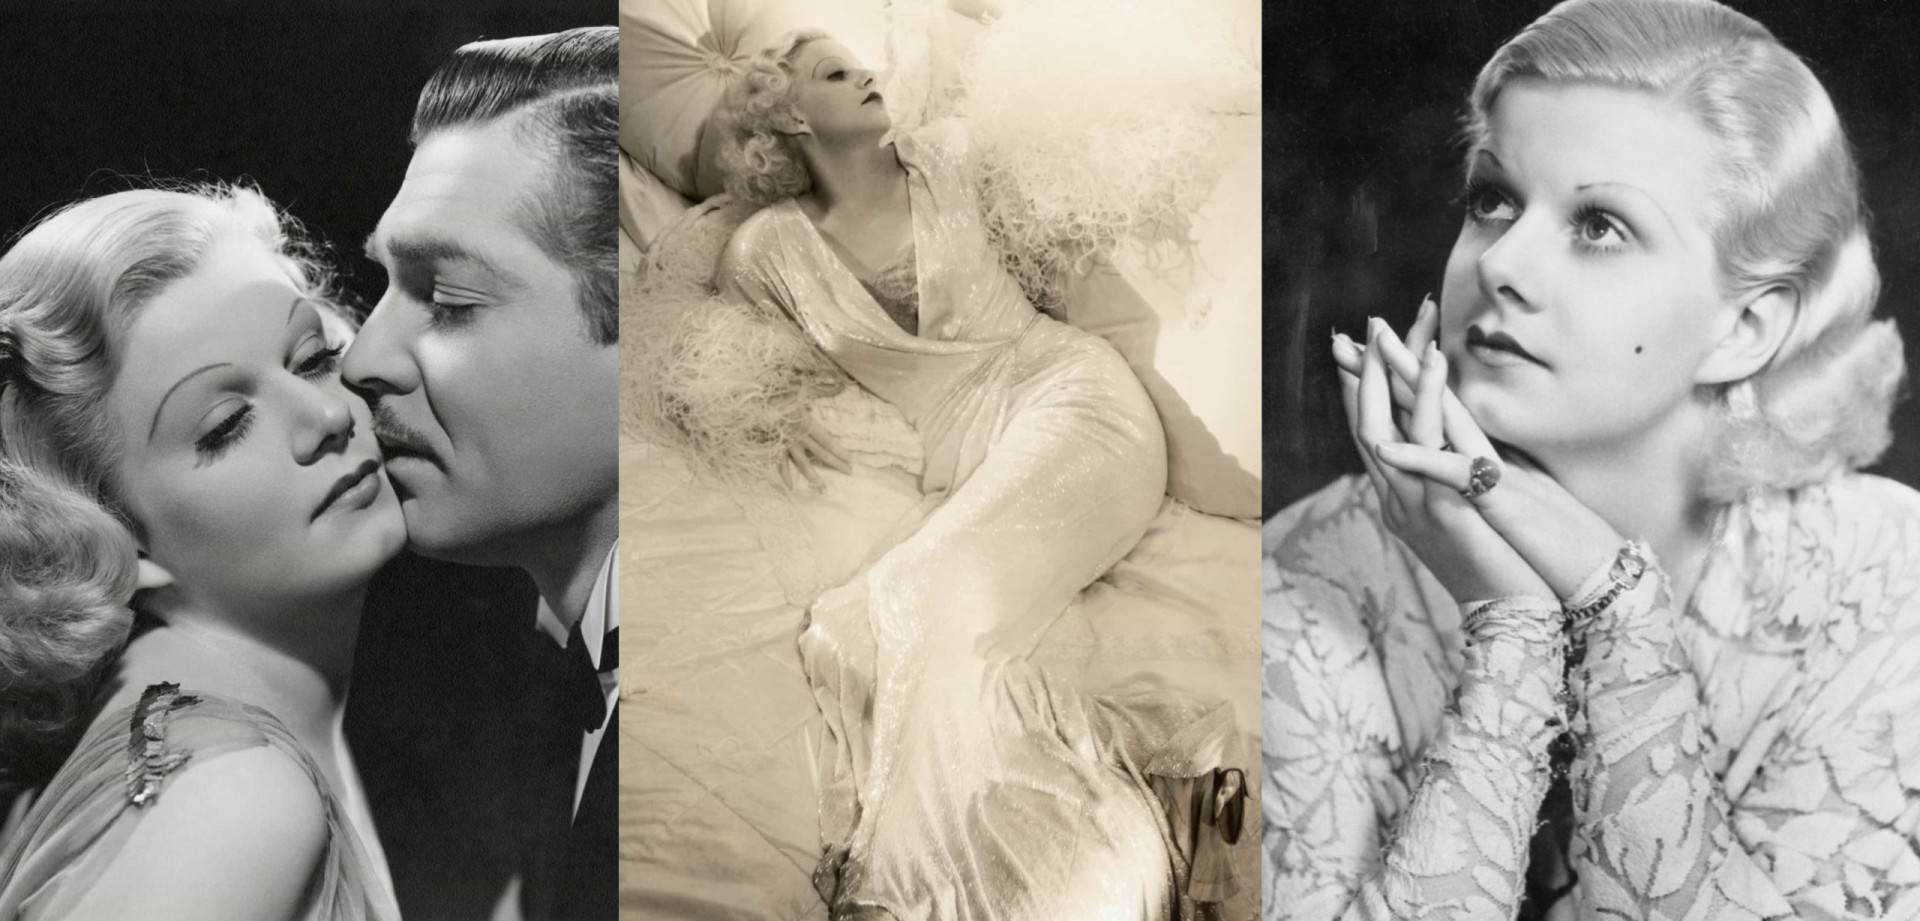 <p>Vor Marily Monroe gab es Jean Harlow. Ein glamouröser Leinwandstar, berühmt für ihre blonden Locken und die sexy Art, sich zu kleiden – sie sorgte im <a href="https://de.starsinsider.com/promis/209755/das-waren-die-stars-der-goldenen-aera-hollywoods" rel="noopener">Hollywood</a> der 1930er für reichlich Gesprächsstoff. Sie wurde zur ersten "blonden Sexbombe", und obwohl die Schauspielerin für ihr Aussehen berühmt wurde, überzeugte sie die Kritiker schon bald mit ihrer Schlagfertigkeit und ihrem Witz in den Komödien, die sie drehte.</p> <p>Leider verstarb der Star auf dem Höhepunkt ihrer Karriere mit nur 26 Jahren. Ihr viel zu kurzes Leben war geprägt von professionellem Erfolg und Tragödien hinter den Kulissen, darunter mehrere unglückliche Ehen und der Selbstmord ihres zweiten Ehemannes. Und wie Sie feststellen werden, hatten auch die blonden Locken ihren Preis.</p> <p>Doch wieso genau endete das Leben dieser wunderschönen Blondine so tragisch und abrupt? Klicken Sie sich durch diese Galerie und erfahren Sie mehr über Hollywoods erste blonde Sexbombe.</p><p>Sie können auch mögen:<a href="https://de.starsinsider.com/n/189049?utm_source=msn.com&utm_medium=display&utm_campaign=referral_description&utm_content=487809v2"> Heißhunger am Tag bändigen: Tipps für eine ausgeglichene Ernährung</a></p>